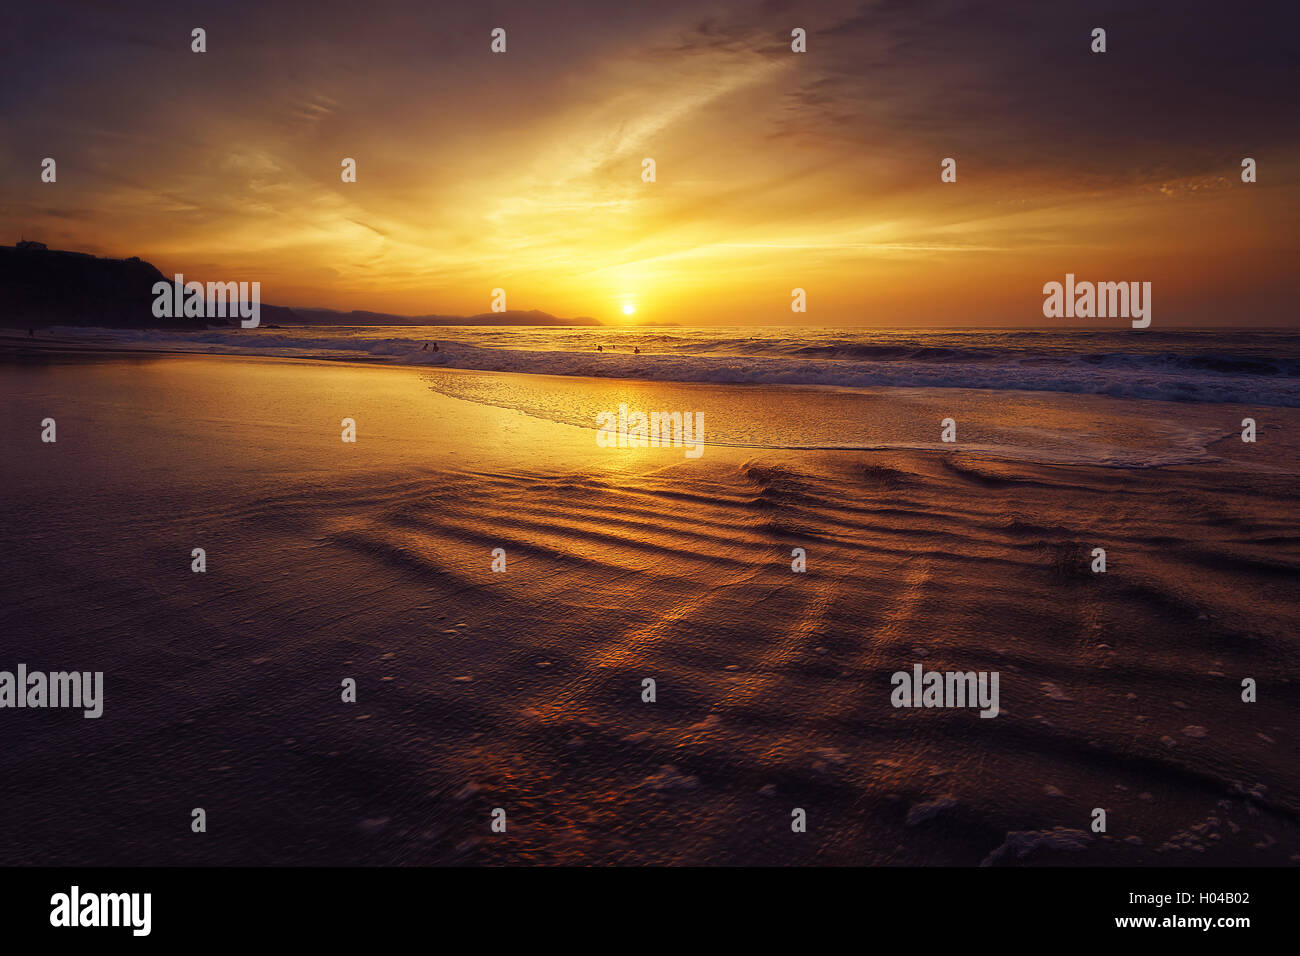 Golden tramonto sulla spiaggia con sole riflessioni di acqua Foto Stock